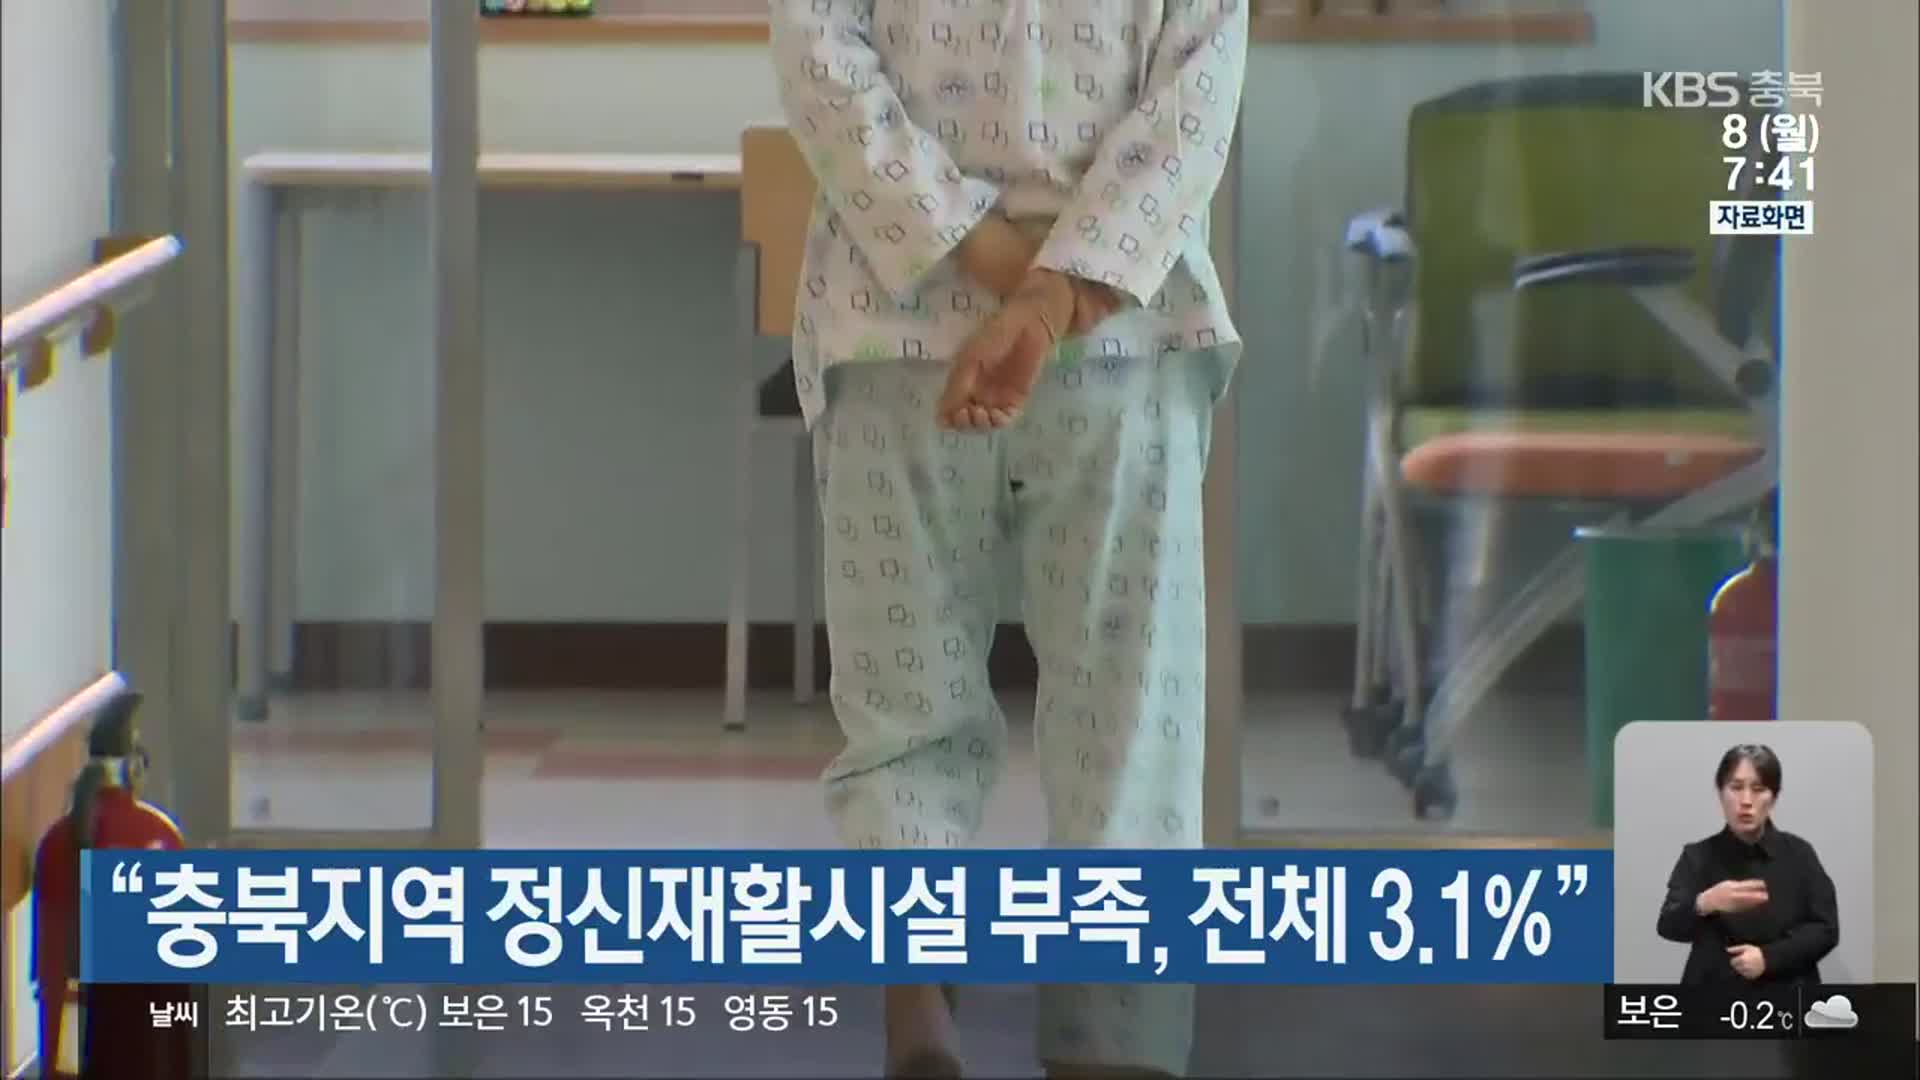 “충북지역 정신재활시설 부족, 전체 3.1%”